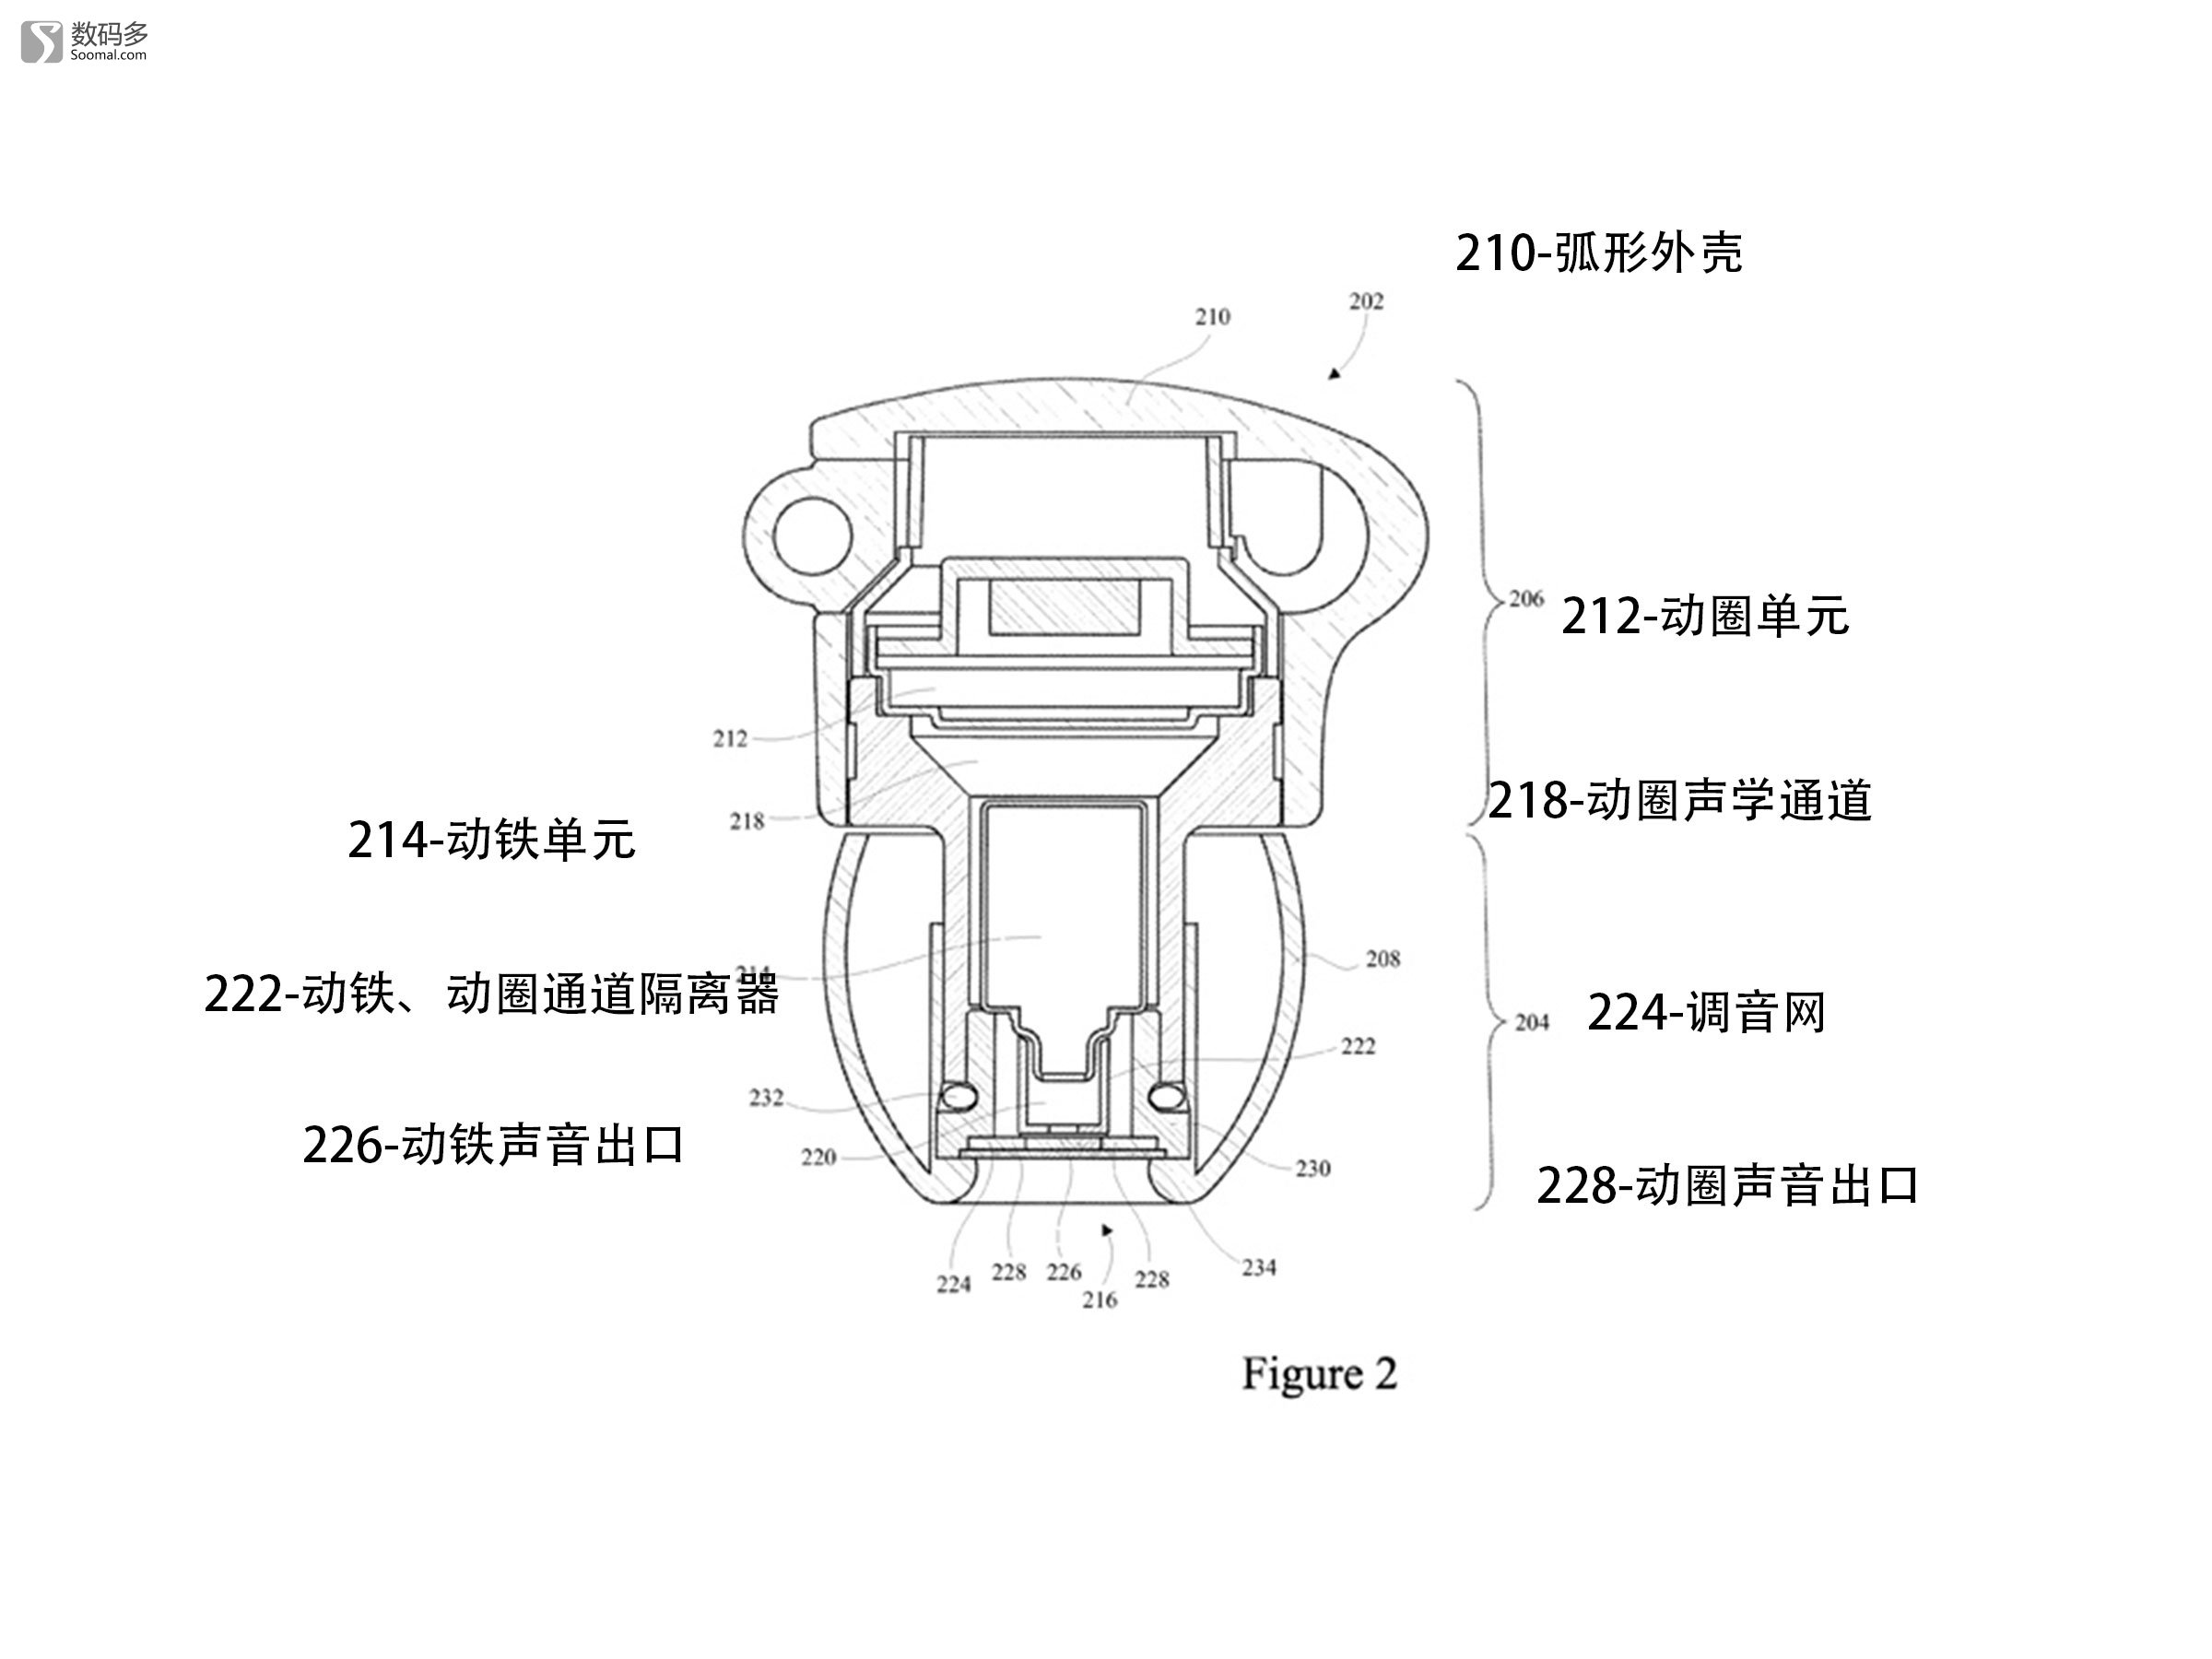 标题爱科技 akg k3003 入耳式圈铁耳机-专利结构图 图片说明